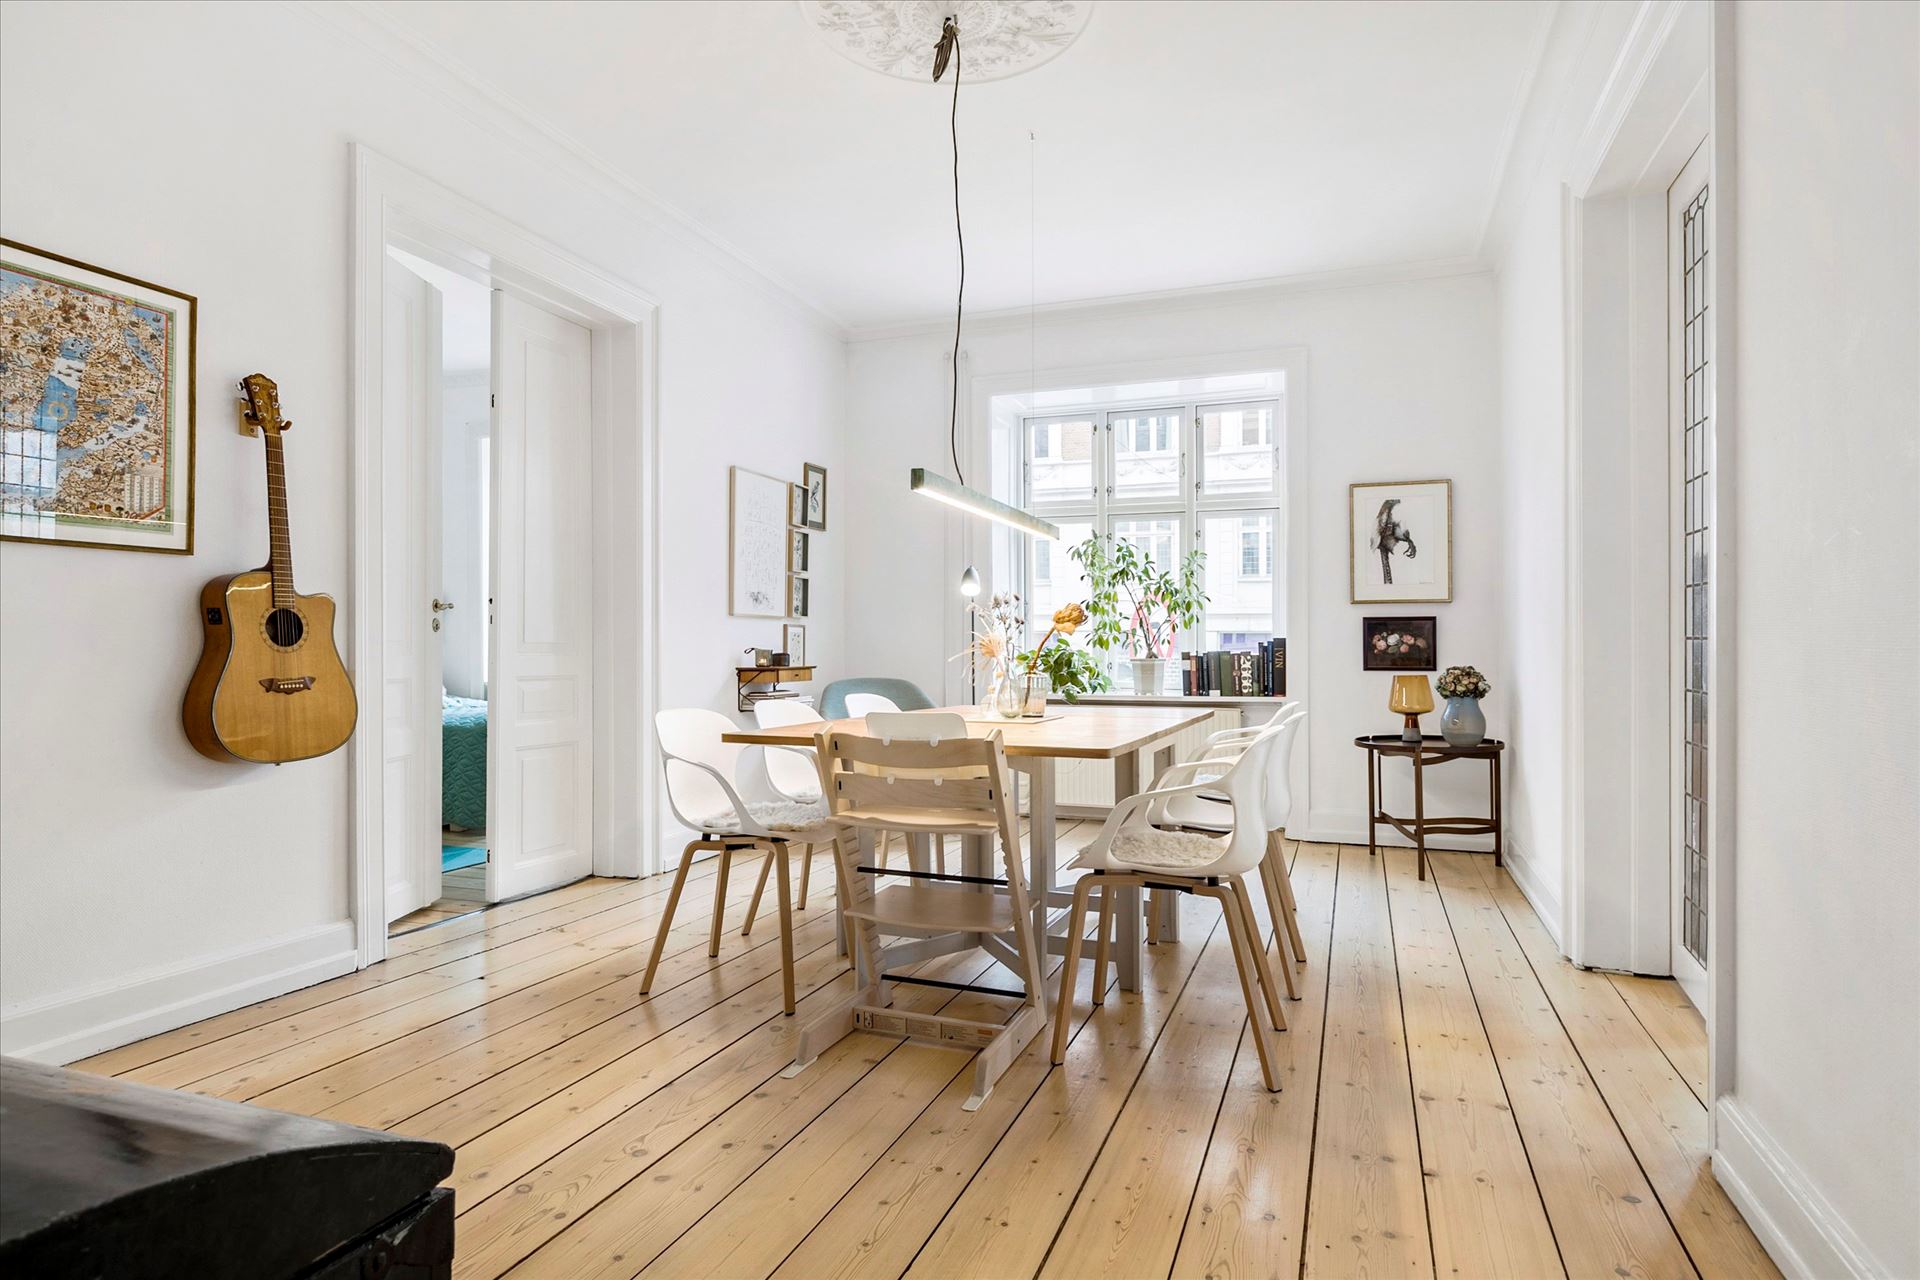 delikatissen pisos modernos pisos escandinavos decoración piso danes estilo nórdico decoración ligera decoración hogareña decoración comedores blog decoración 